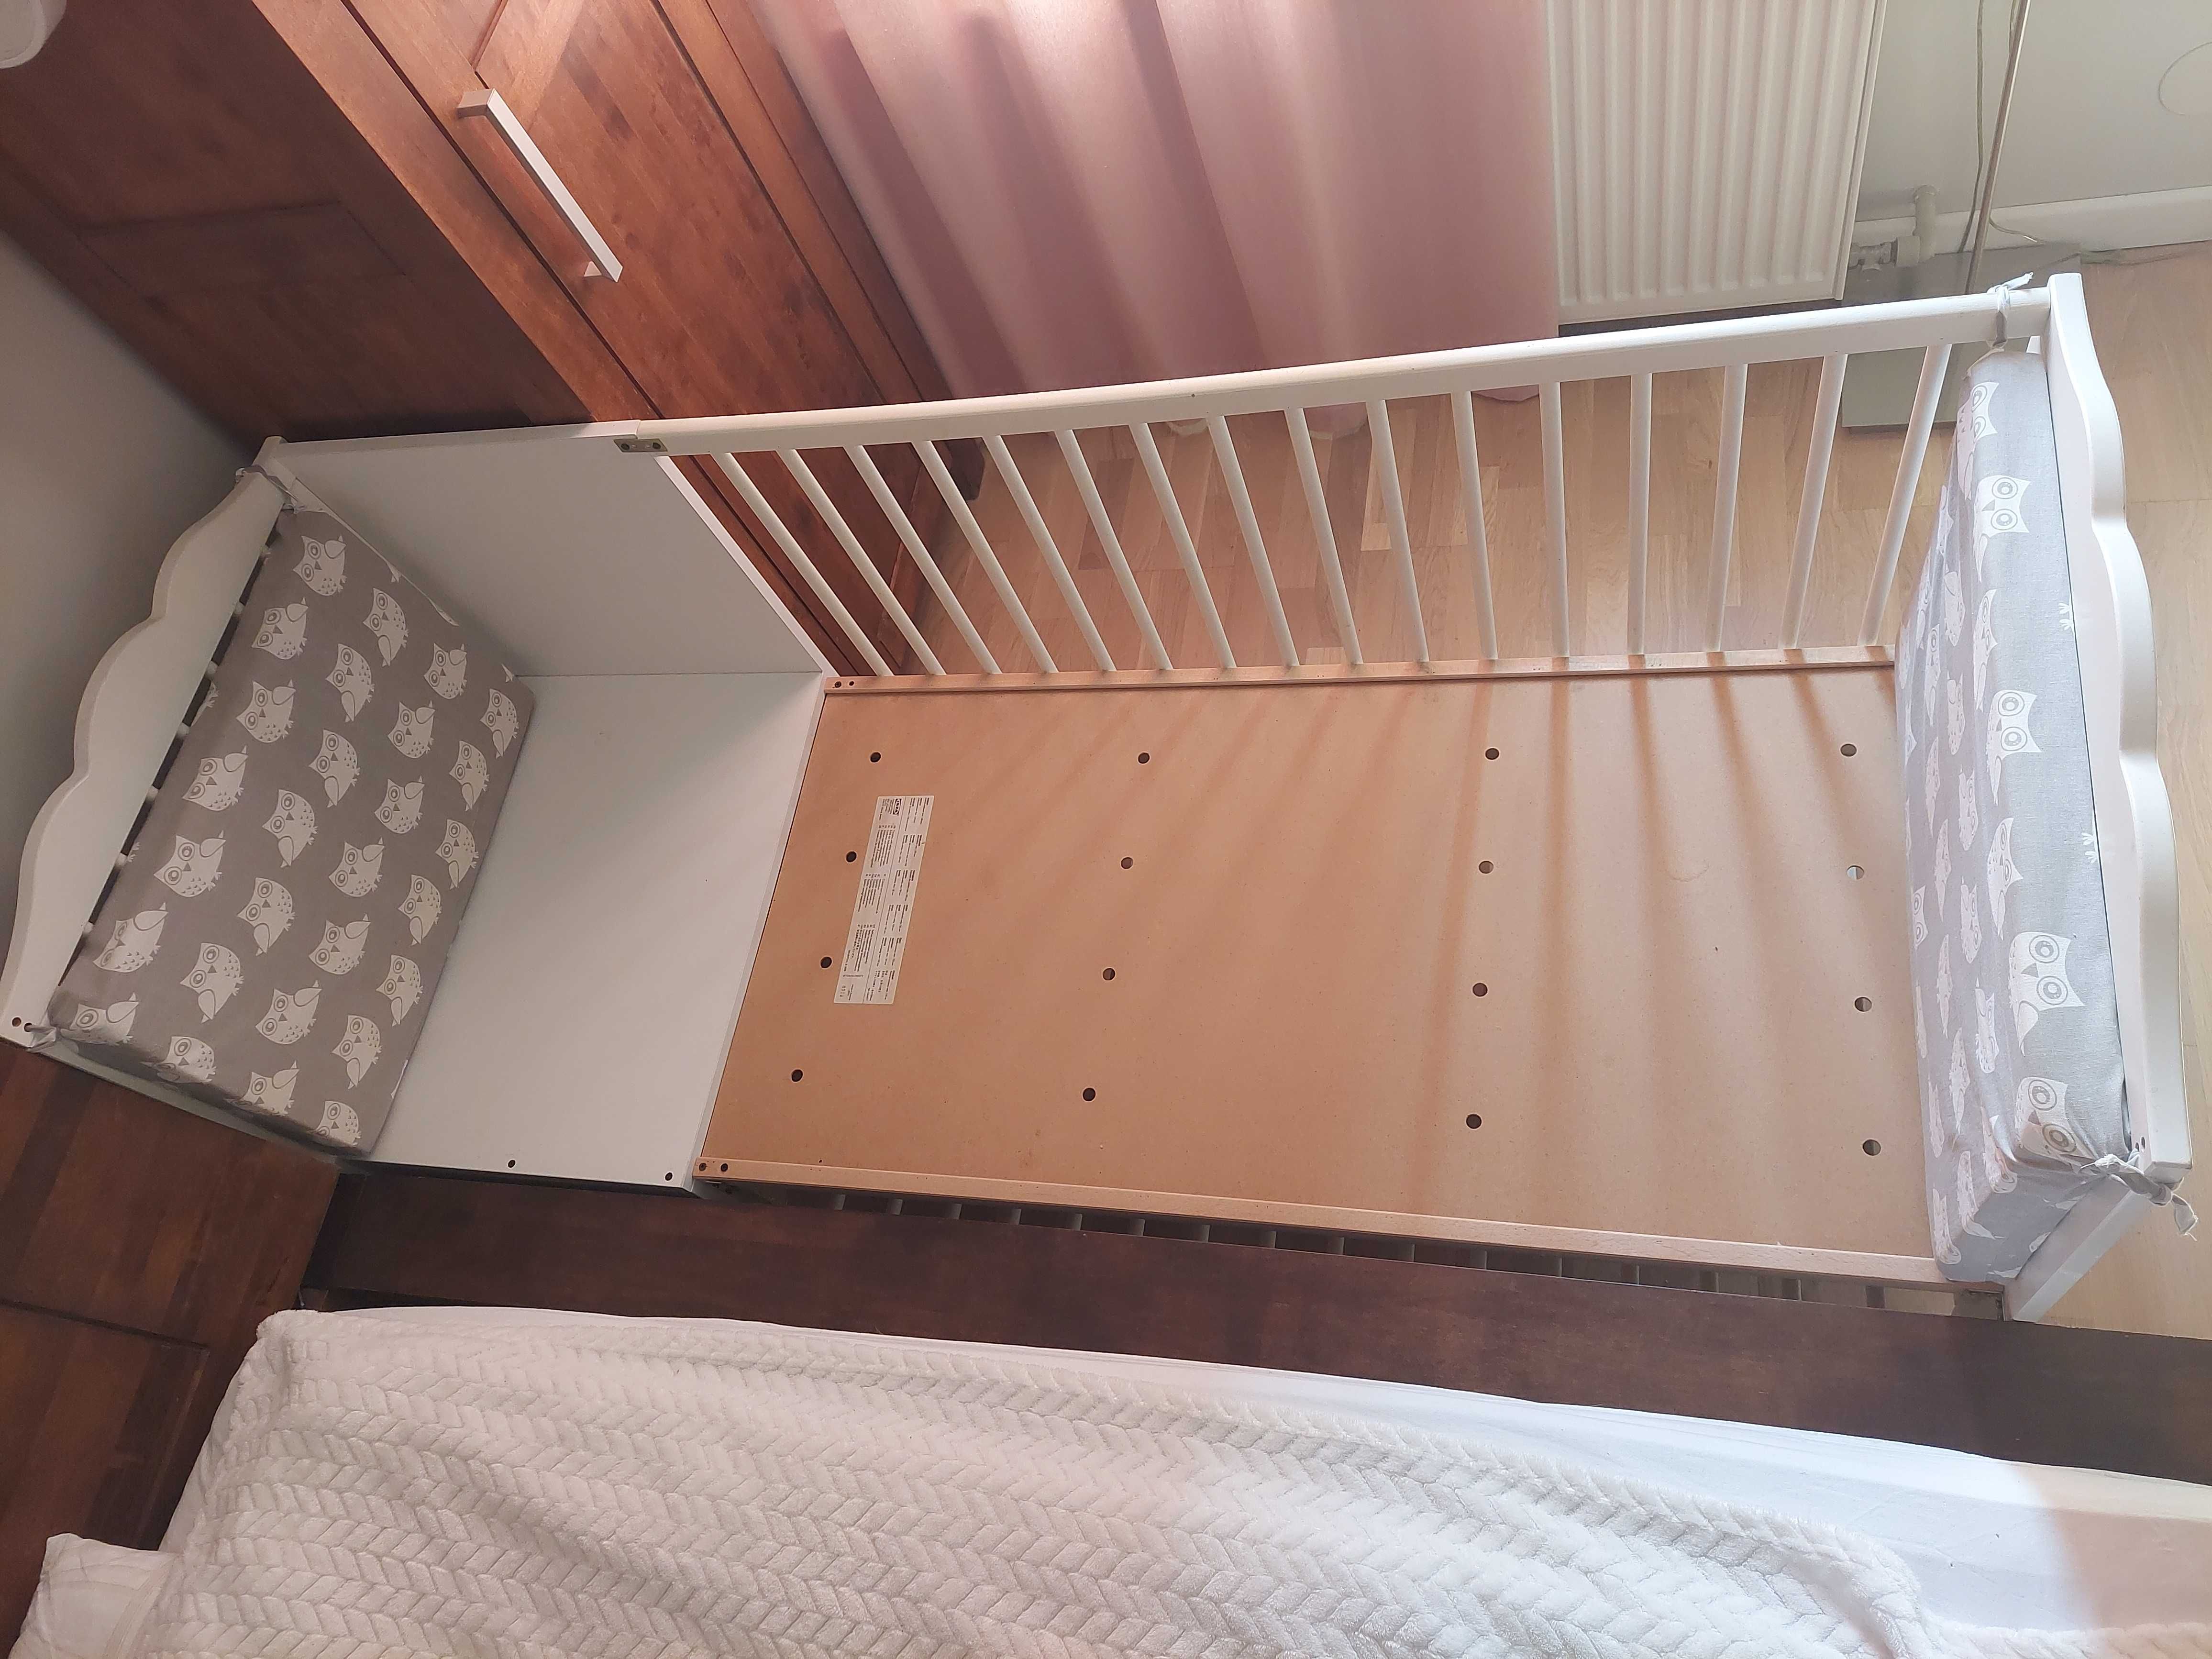 Łóżko łóżeczko IKEA białe 120 x 60